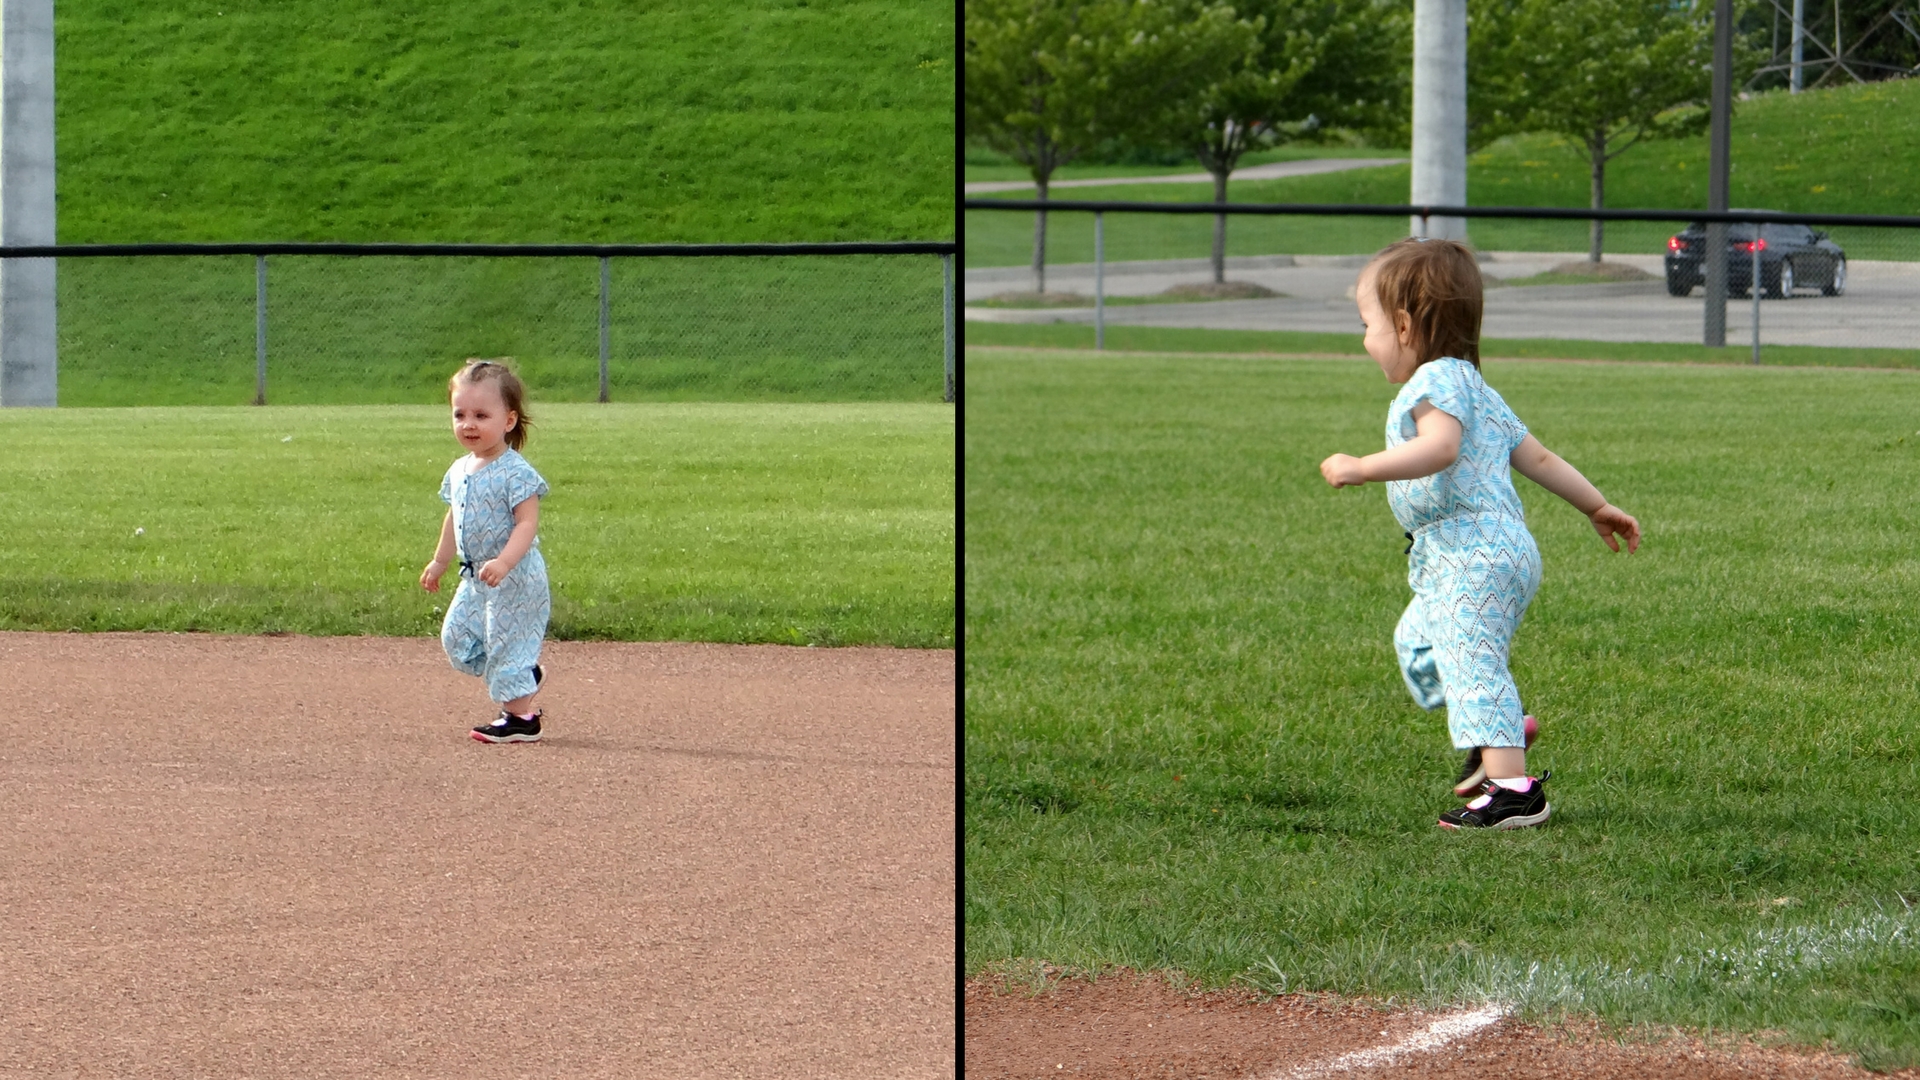 Peachy runs after birds on a baseball diamond